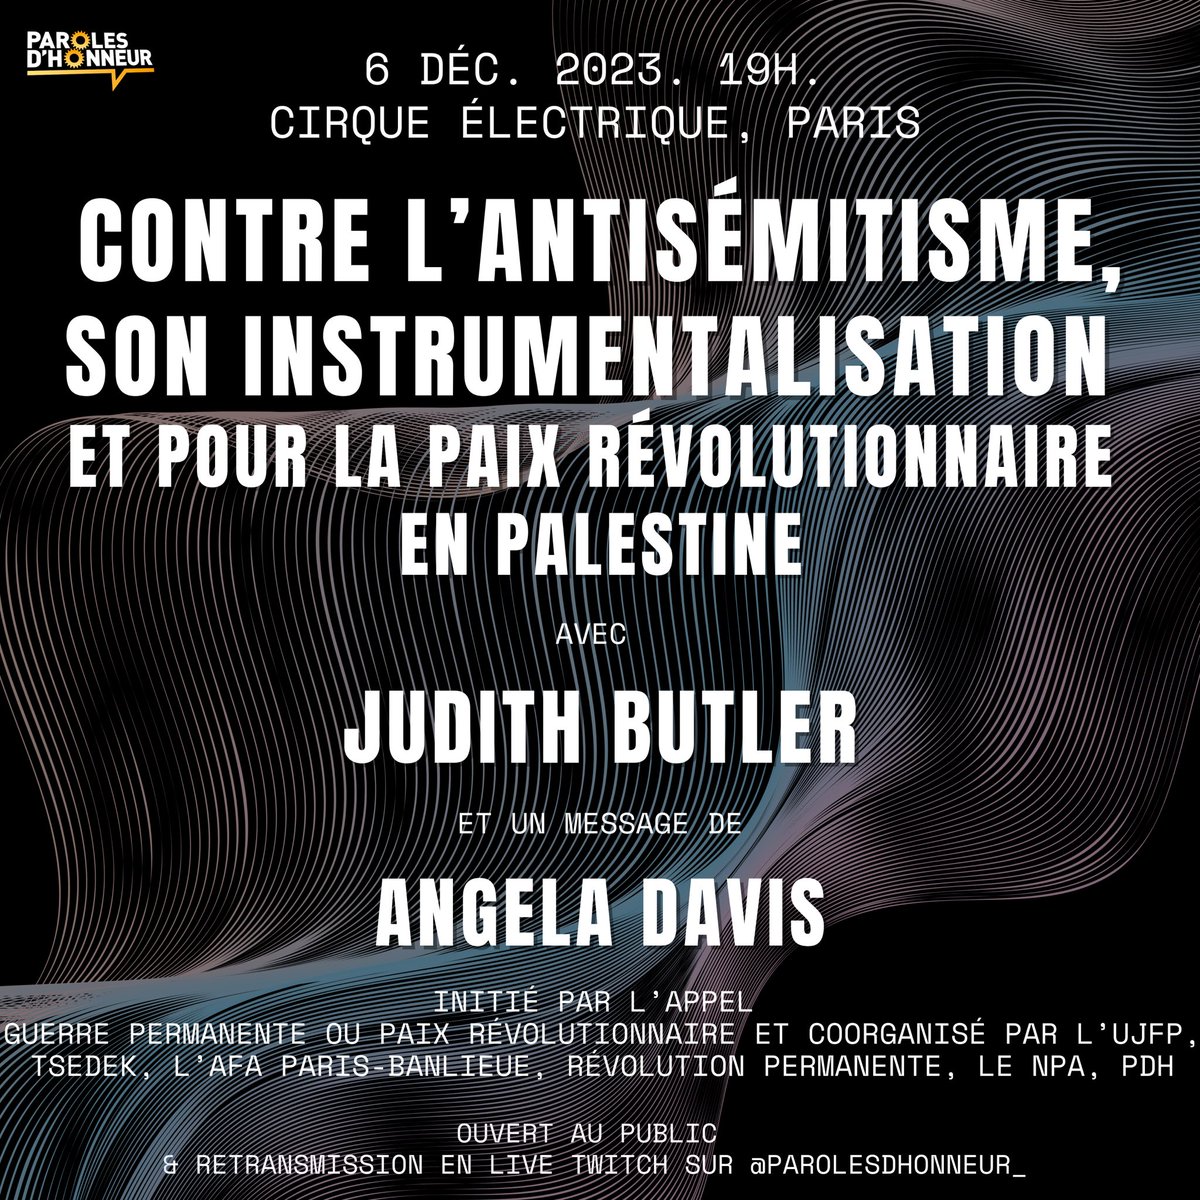 ÉVÉNEMENT : Le 6 décembre 2023, à 19h, le Cirque Électrique à Paris accueille notre rencontre publique contre l’antisémitisme, son instrumentalisation et pour la paix révolutionnaire en Palestine. Nous avons le plaisir de recevoir Judith Butler pour en discuter, ainsi qu'Angela…